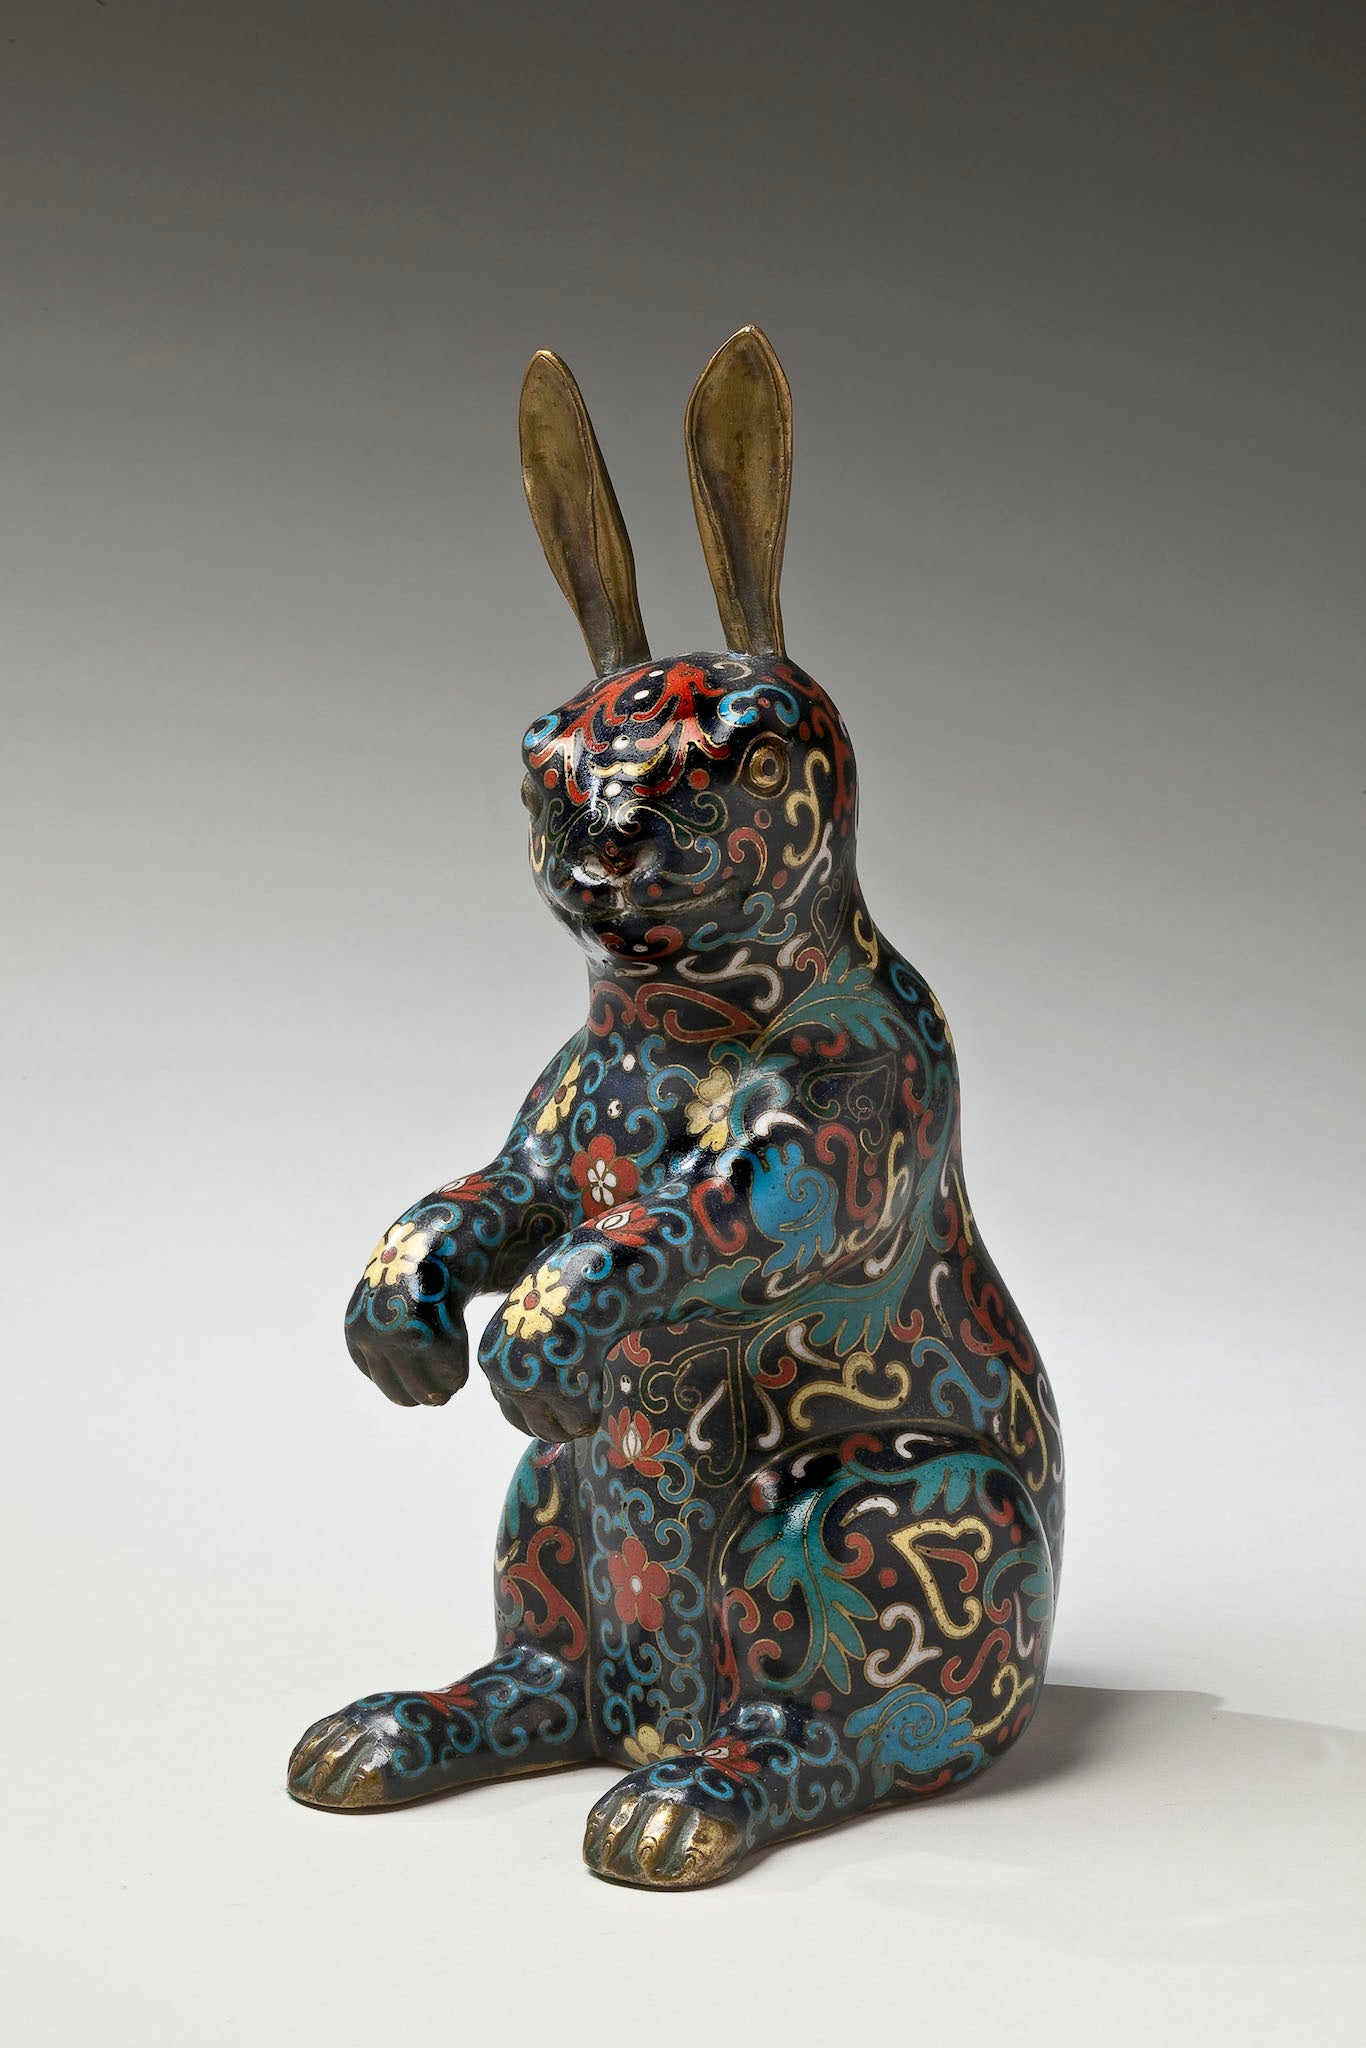 Stylized-Cloisonne-Rabbit-Sculpture